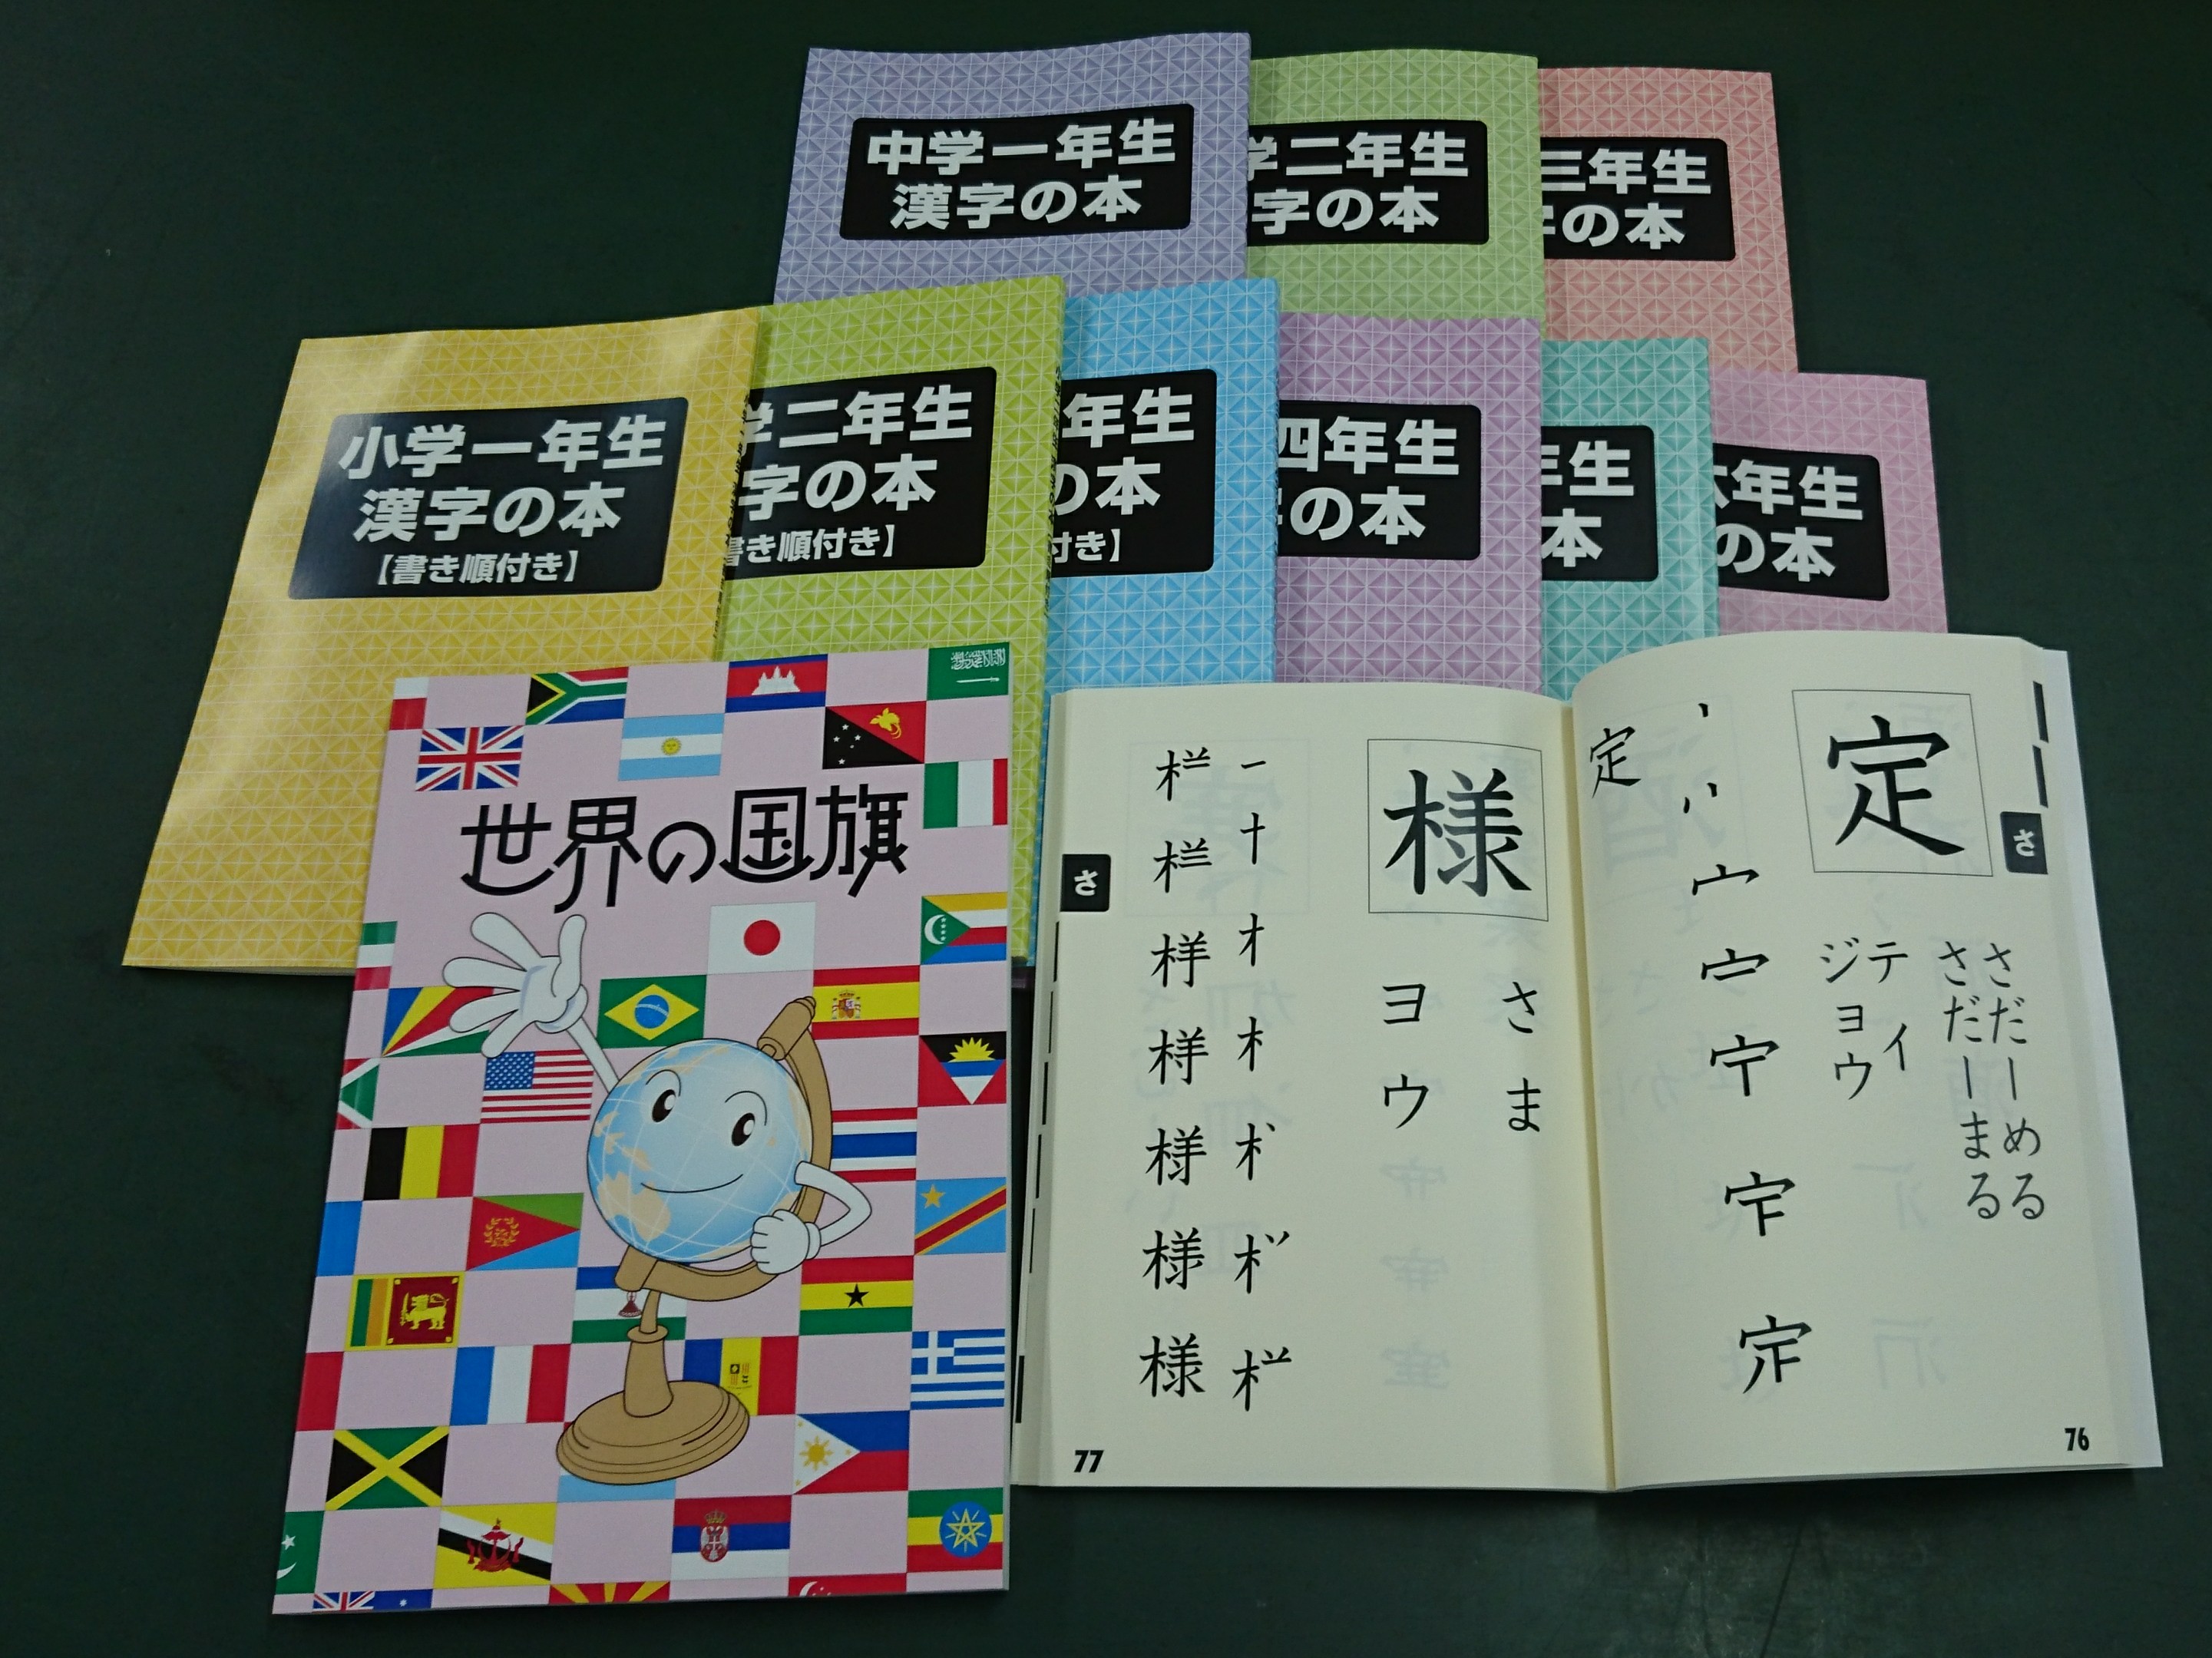 今年も社会貢献活動として、盲学校へ拡大漢字の本を寄贈させて頂きました